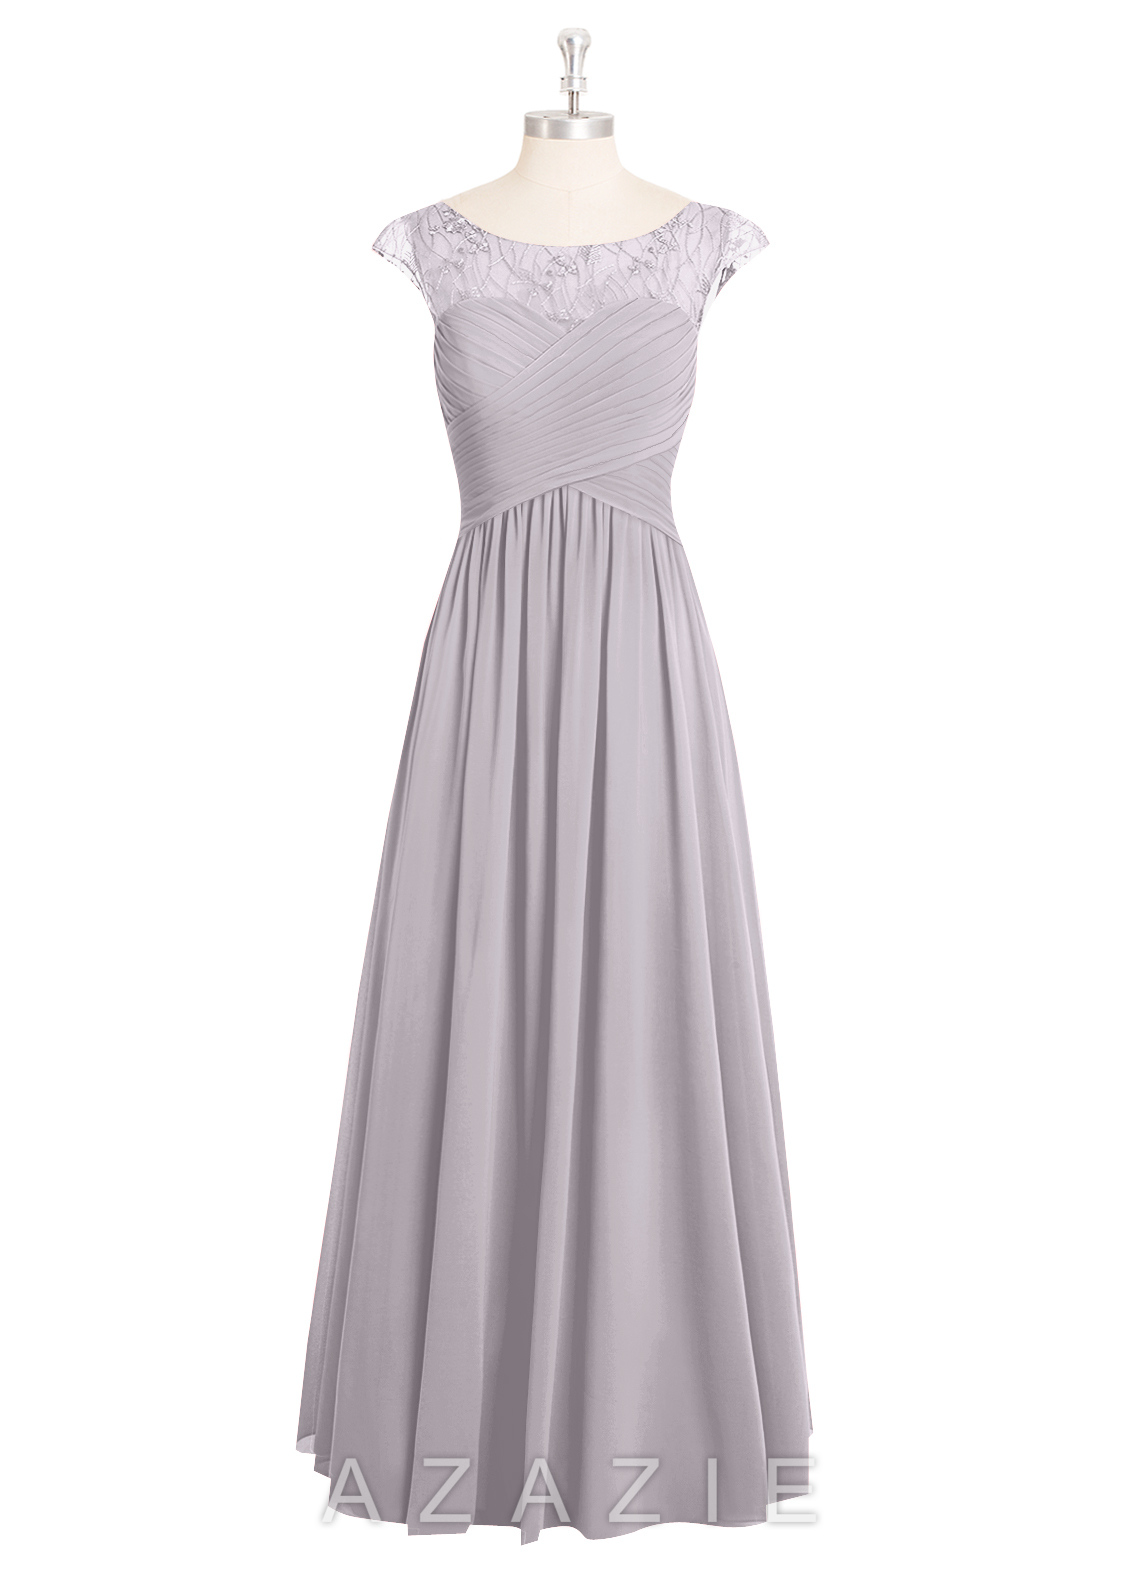 Azazie Tobey Bridesmaid Dress | Azazie